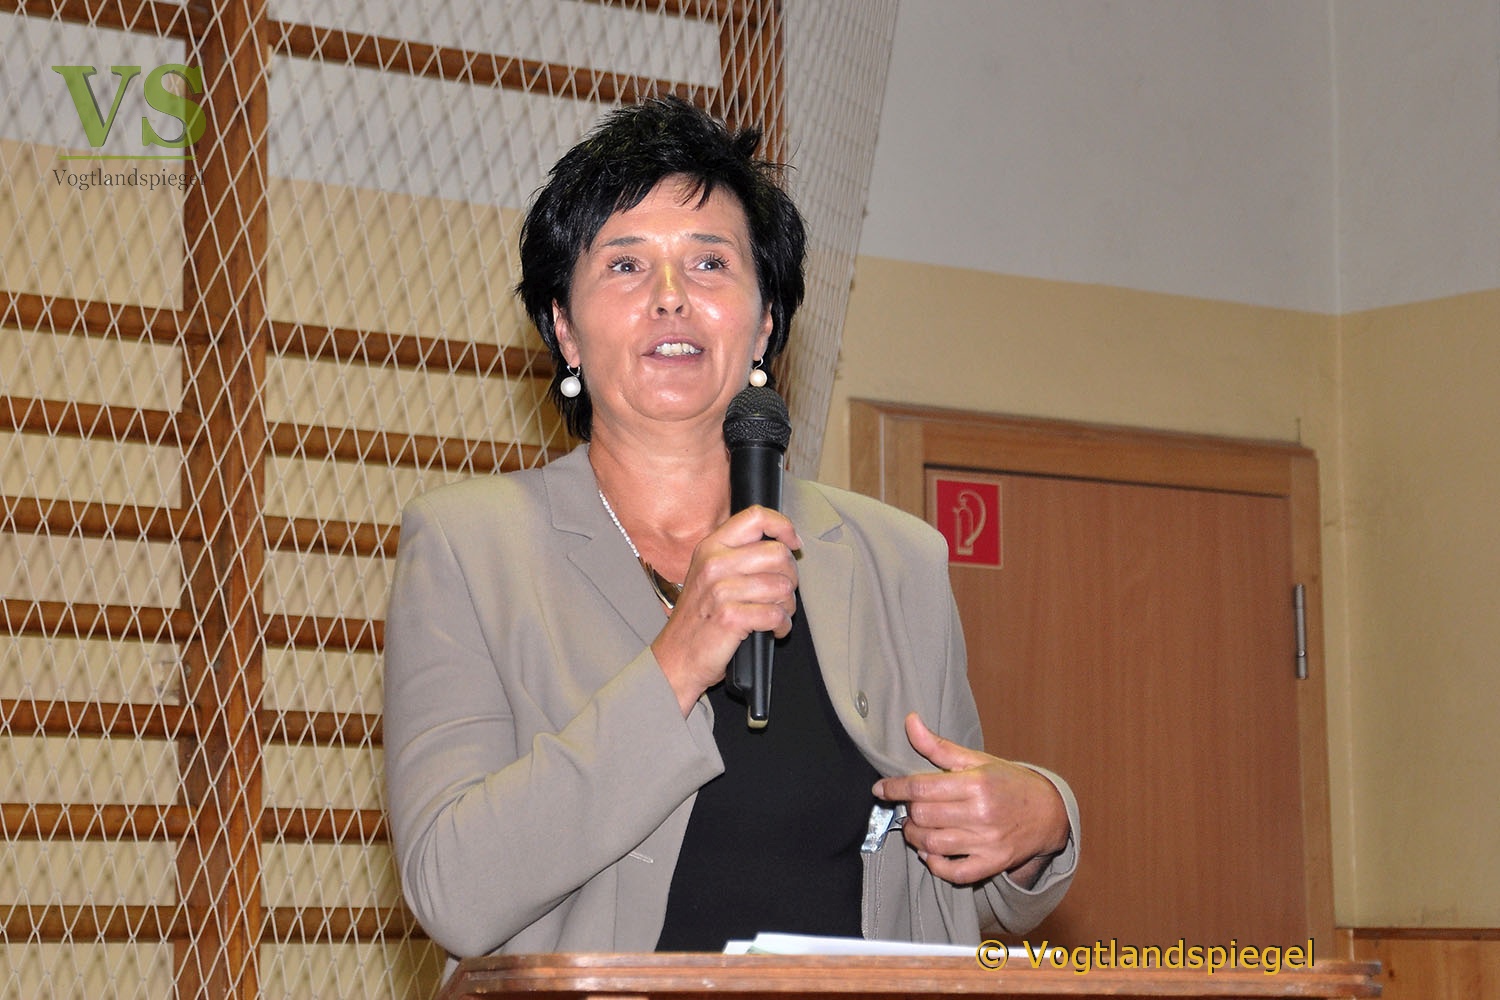 Bürgermeisterkandidaten der Landgemeinde Mohlsdorf-Teichwolframsdorf stellen sich vor